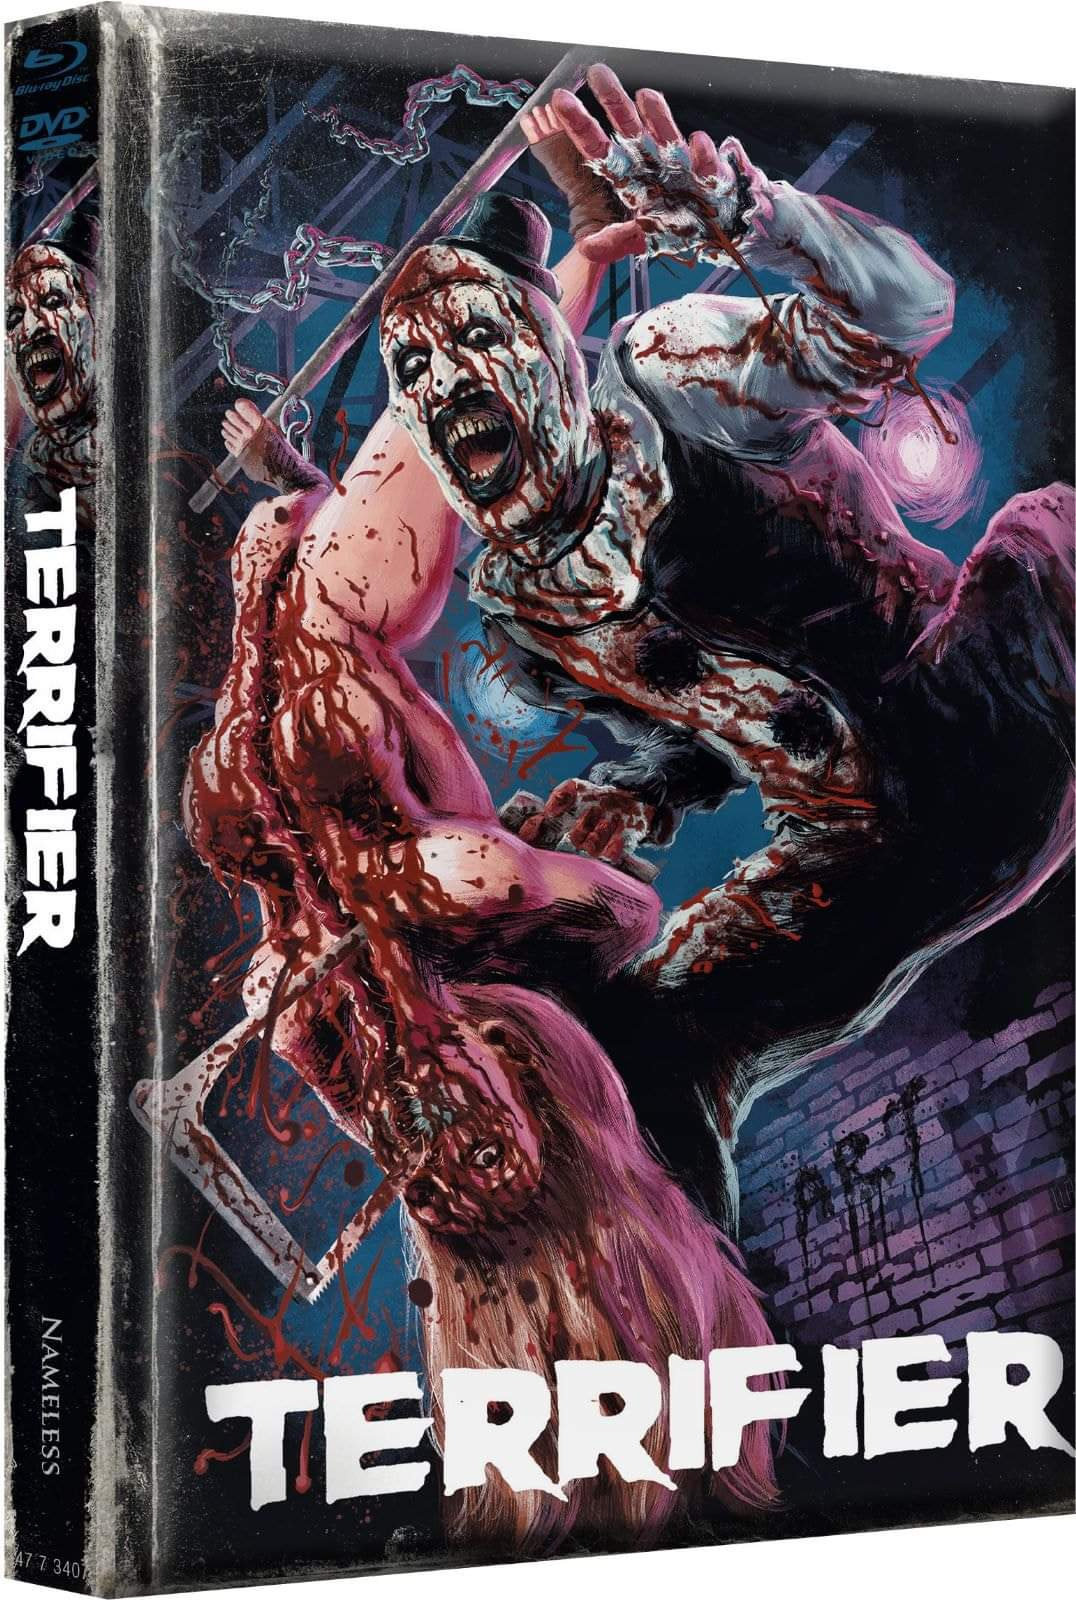 Terrifier - Uncut Mediabook Edition (DVD+blu-ray) (J) | 37345